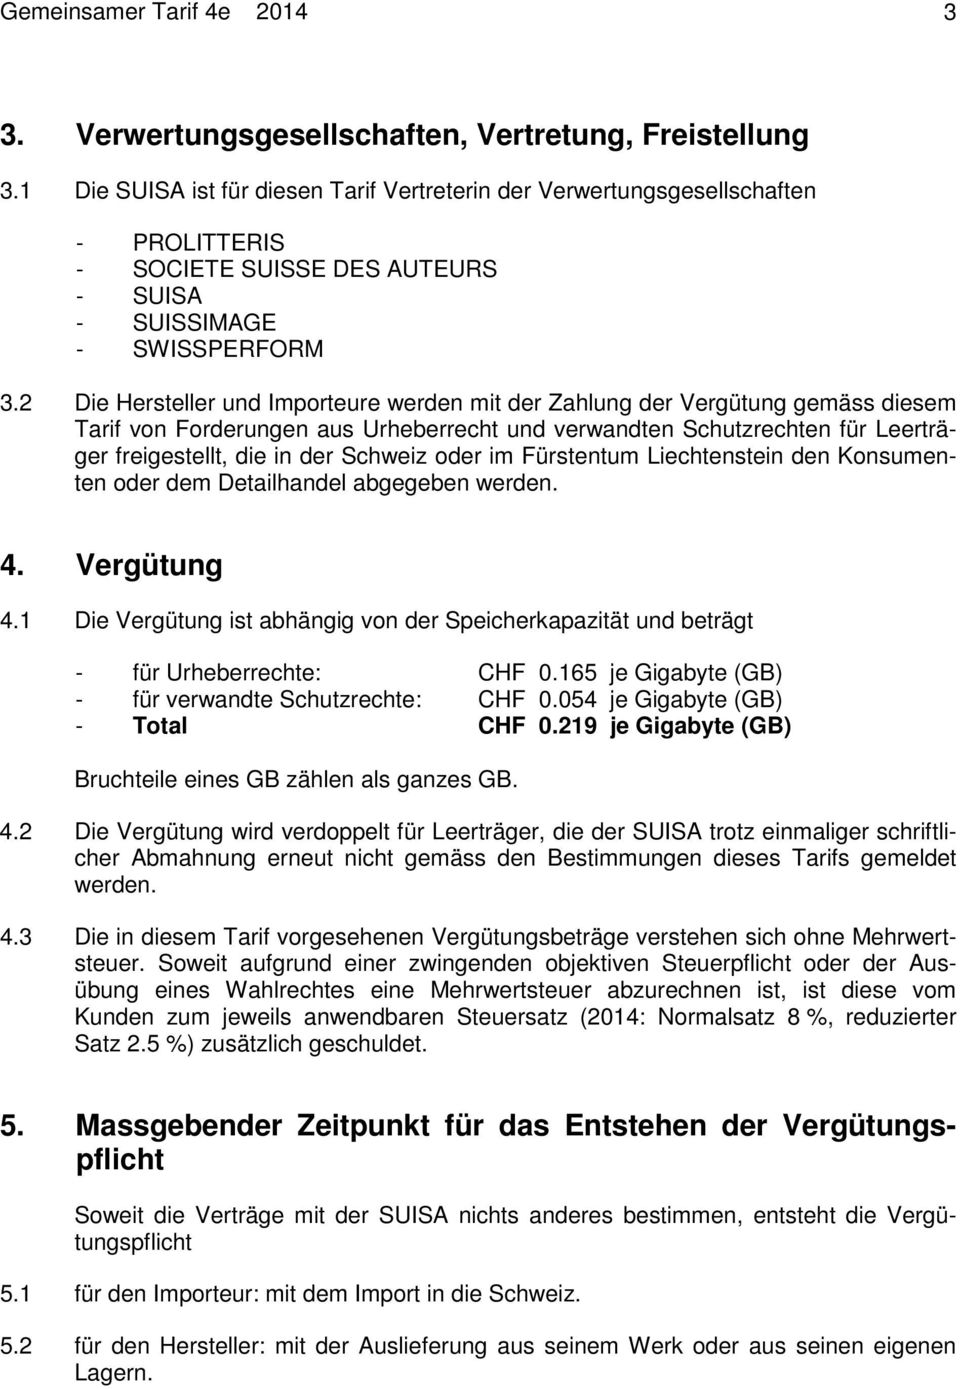 2 Die Hersteller und Importeure werden mit der Zahlung der Vergütung gemäss diesem Tarif von Forderungen aus Urheberrecht und verwandten Schutzrechten für Leerträger freigestellt, die in der Schweiz